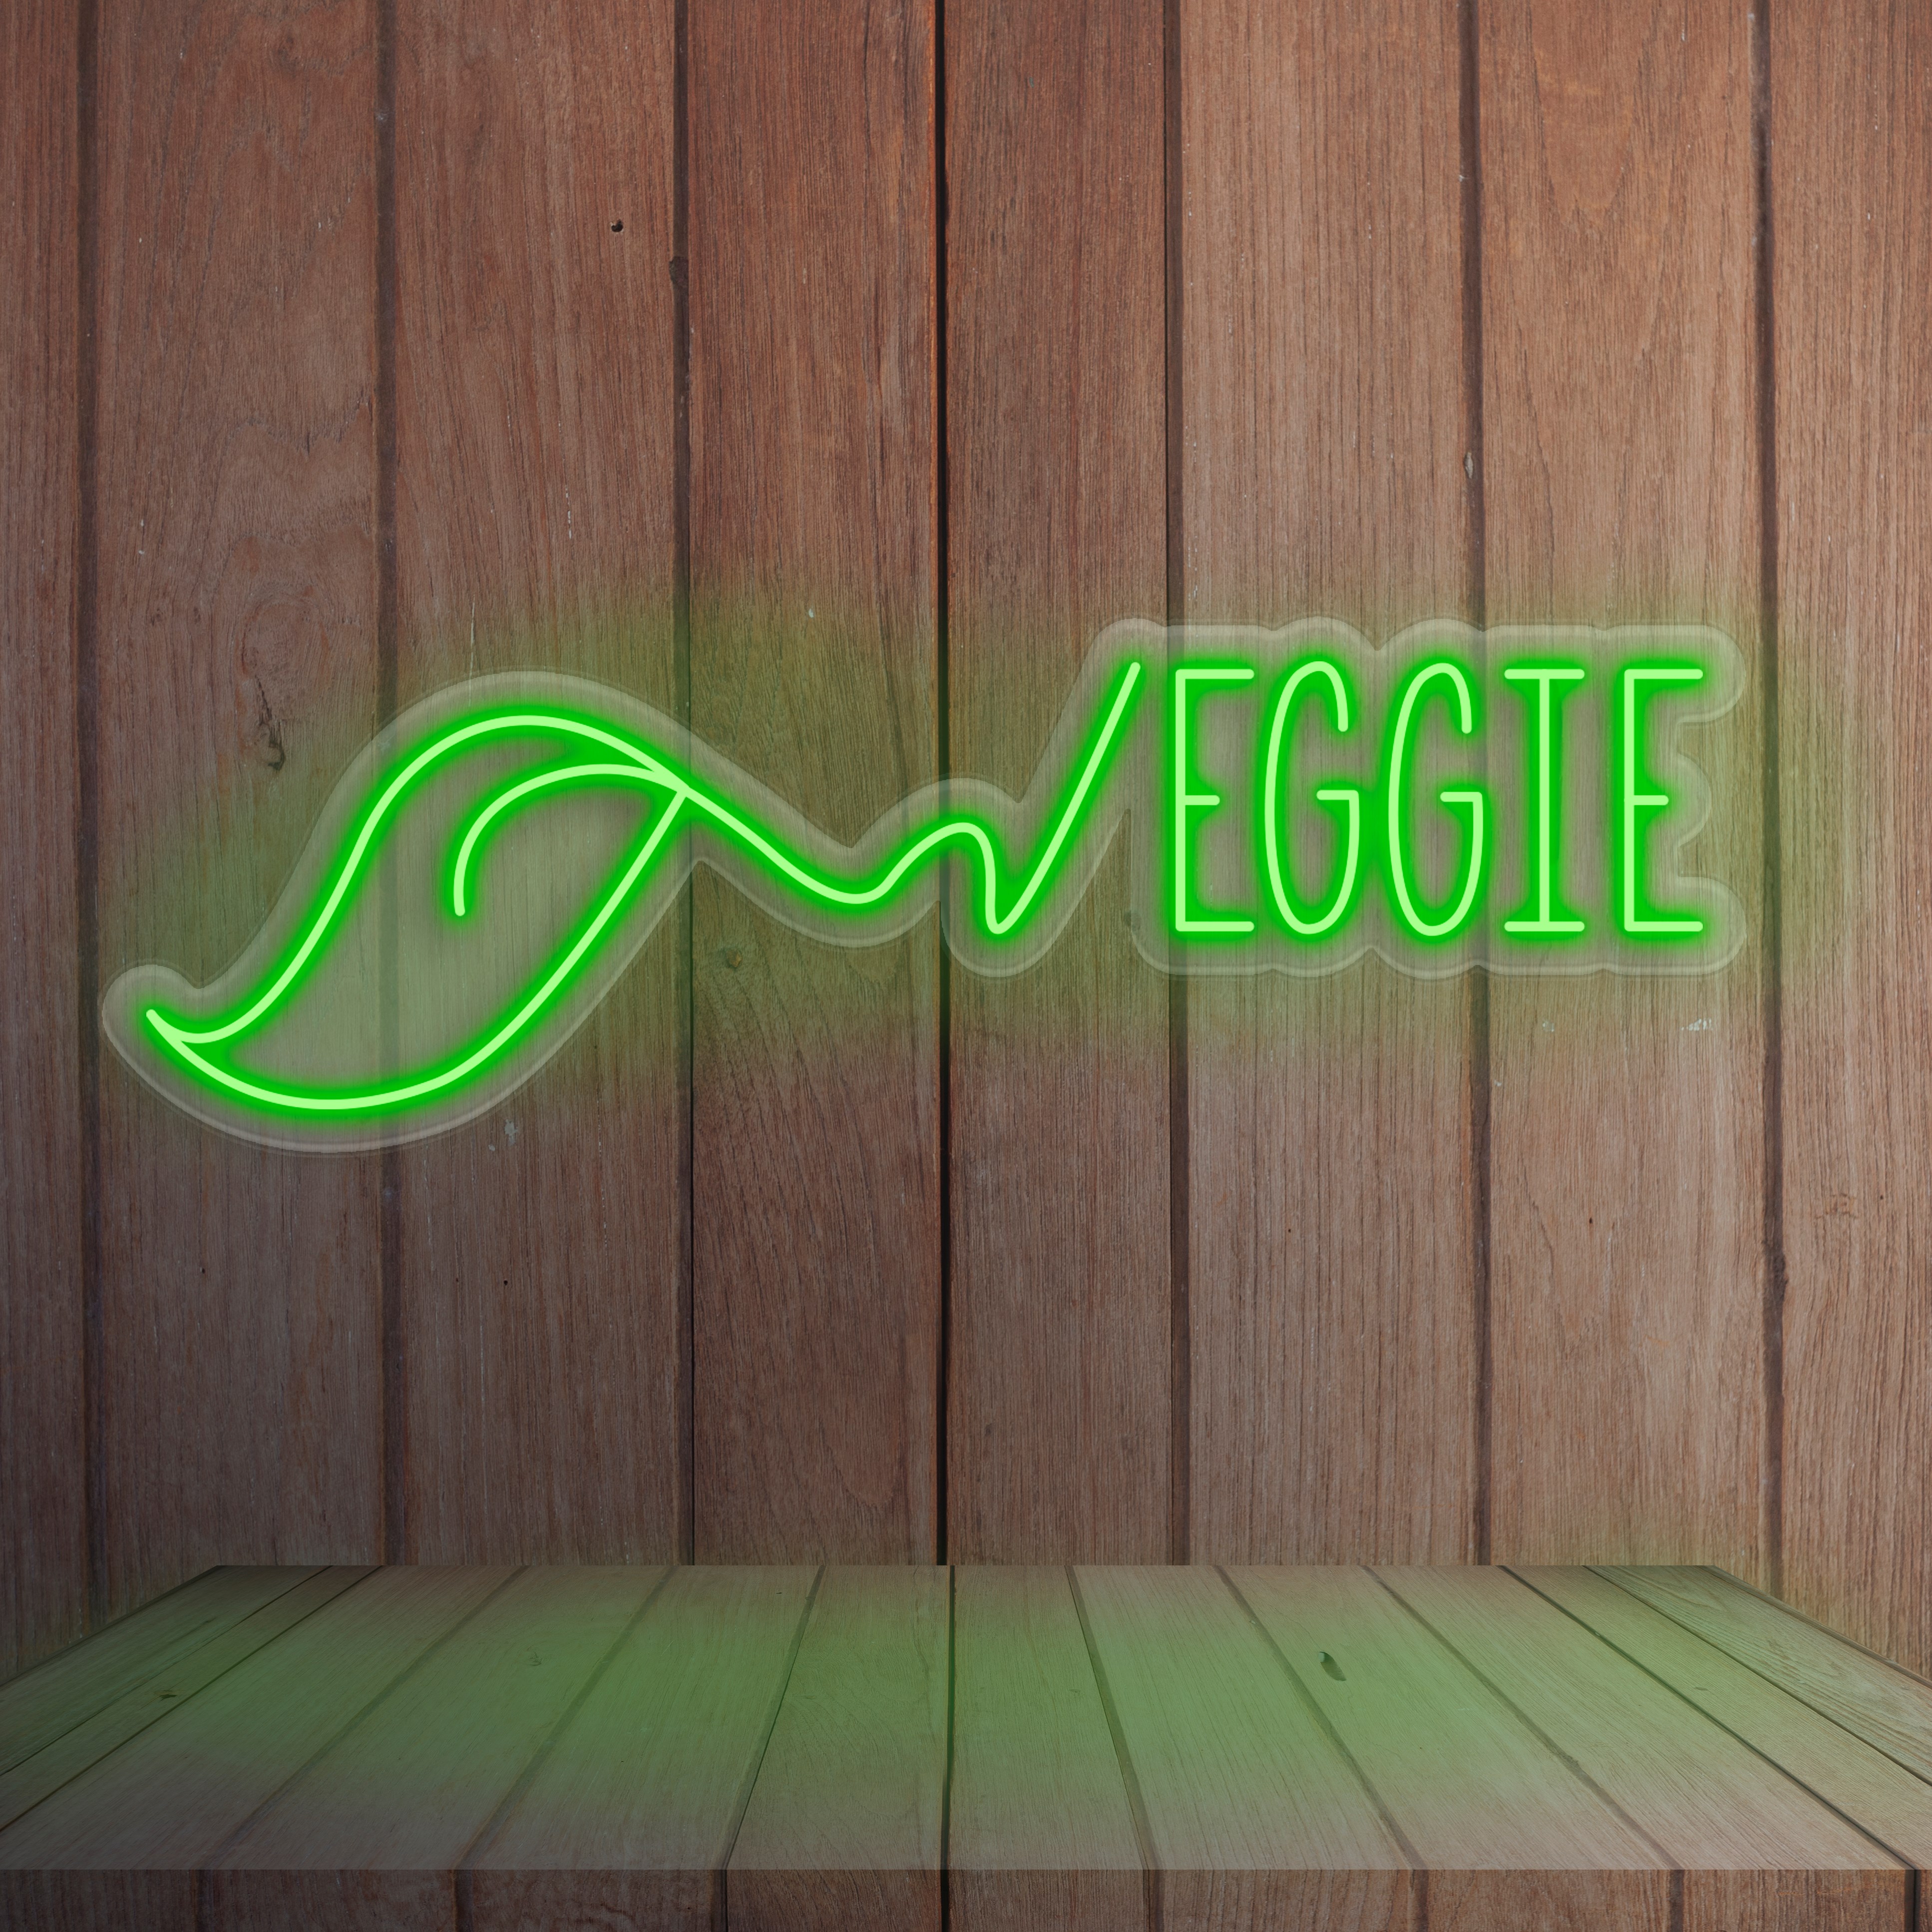 Bild von Neon für Restaurant "Veggie"